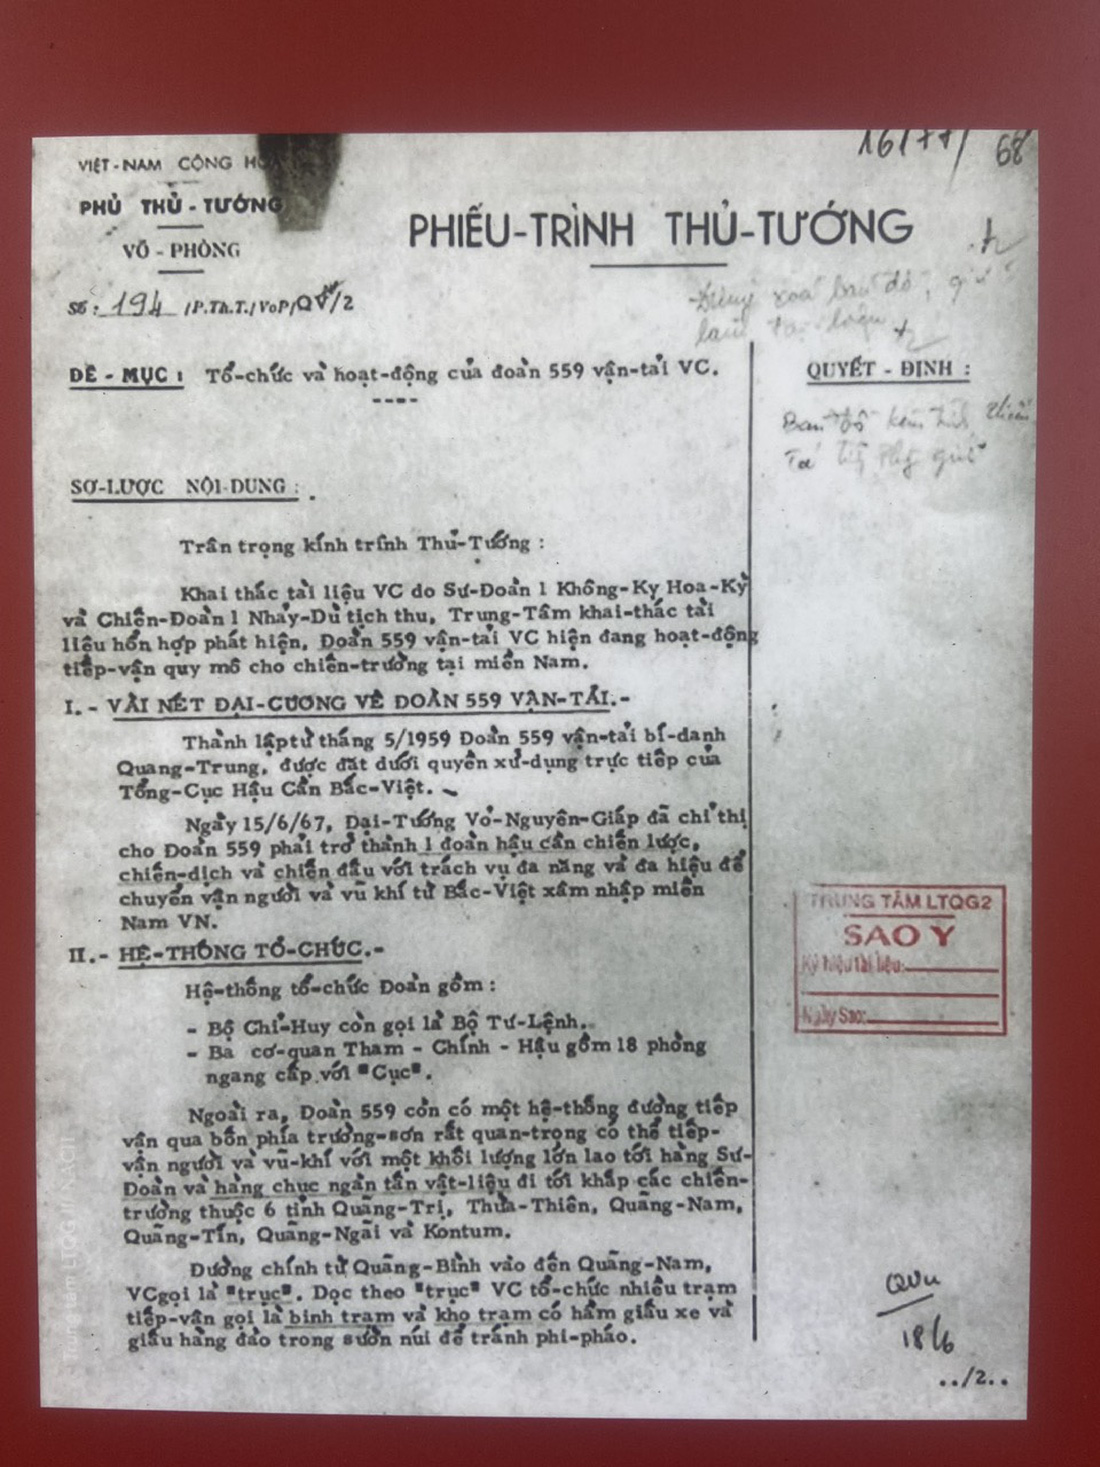 Tài liệu của Chính phủ Việt Nam Cộng hòa về tổ chức và hoạt động của Đoàn 559, năm 1967